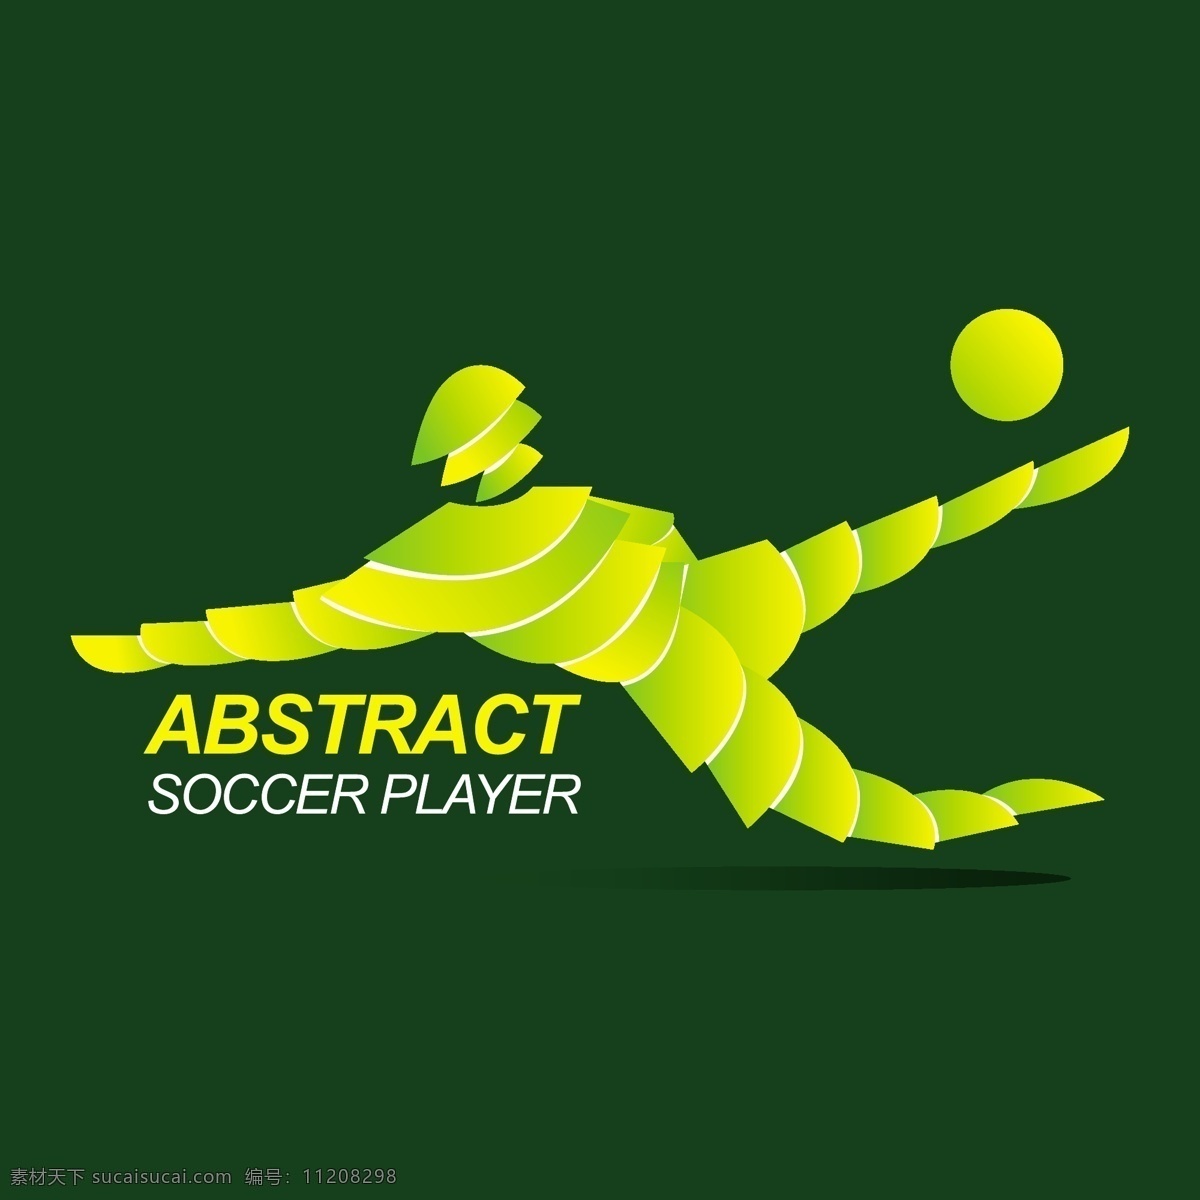 抽象 足球 运动员 卡通 插画 世界杯 足球运动员 抽象矢量 叶子抽象